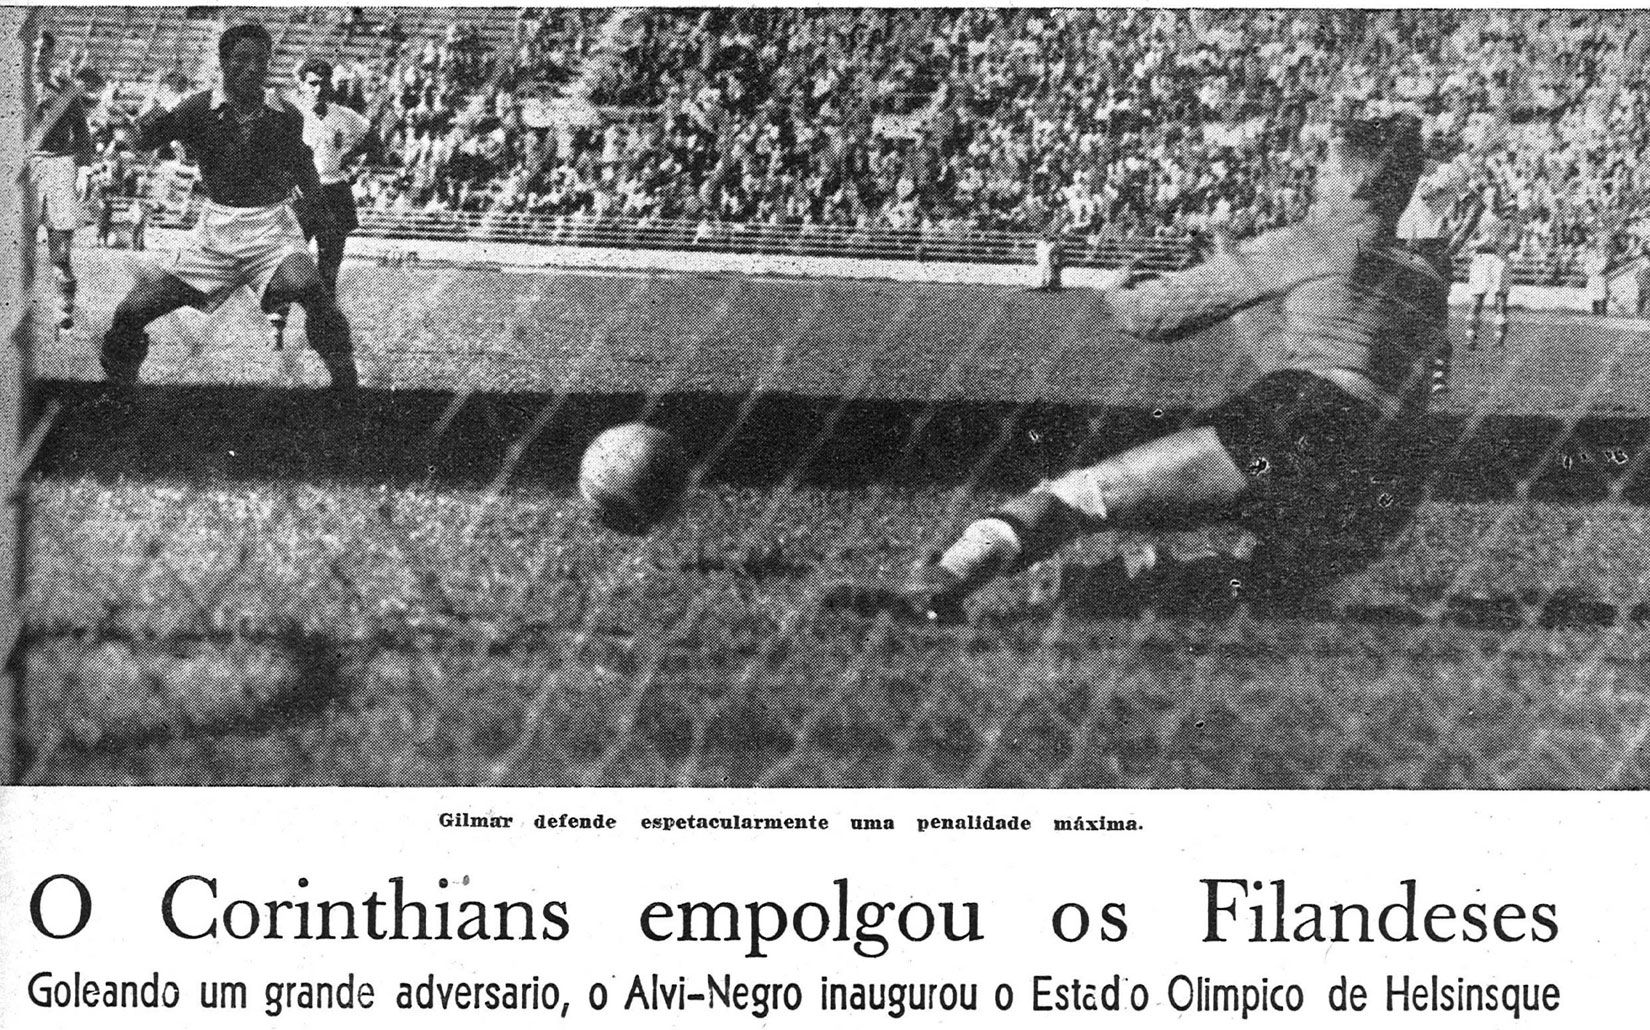 Manchete da Revista do Corinthians de 1952, exaltando o Timão na Finlândia. FOTO: Revista do Corinthians